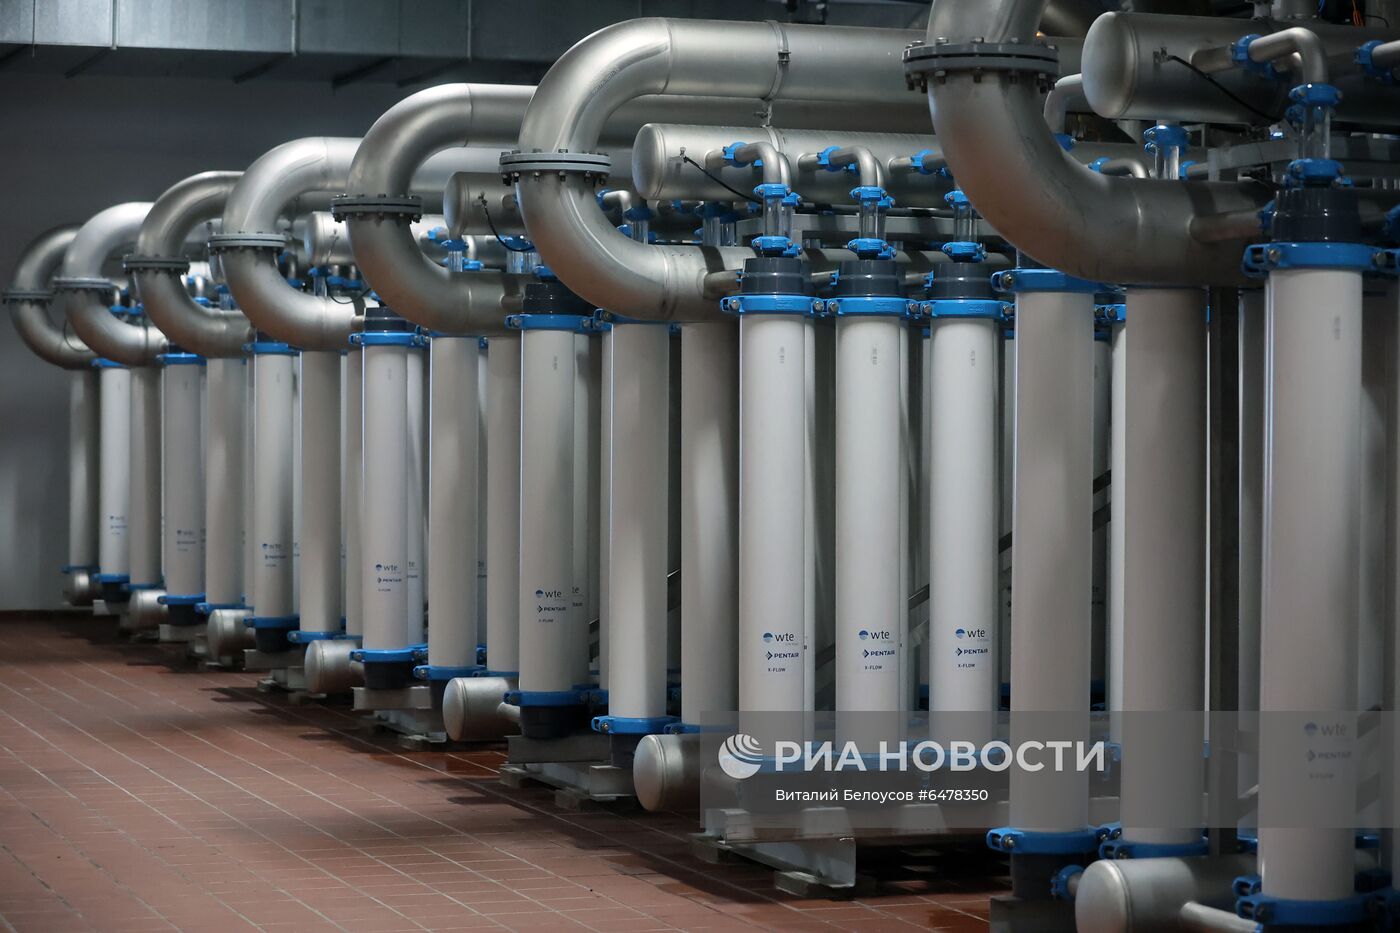 Центр контроля качества воды Мосводоканала